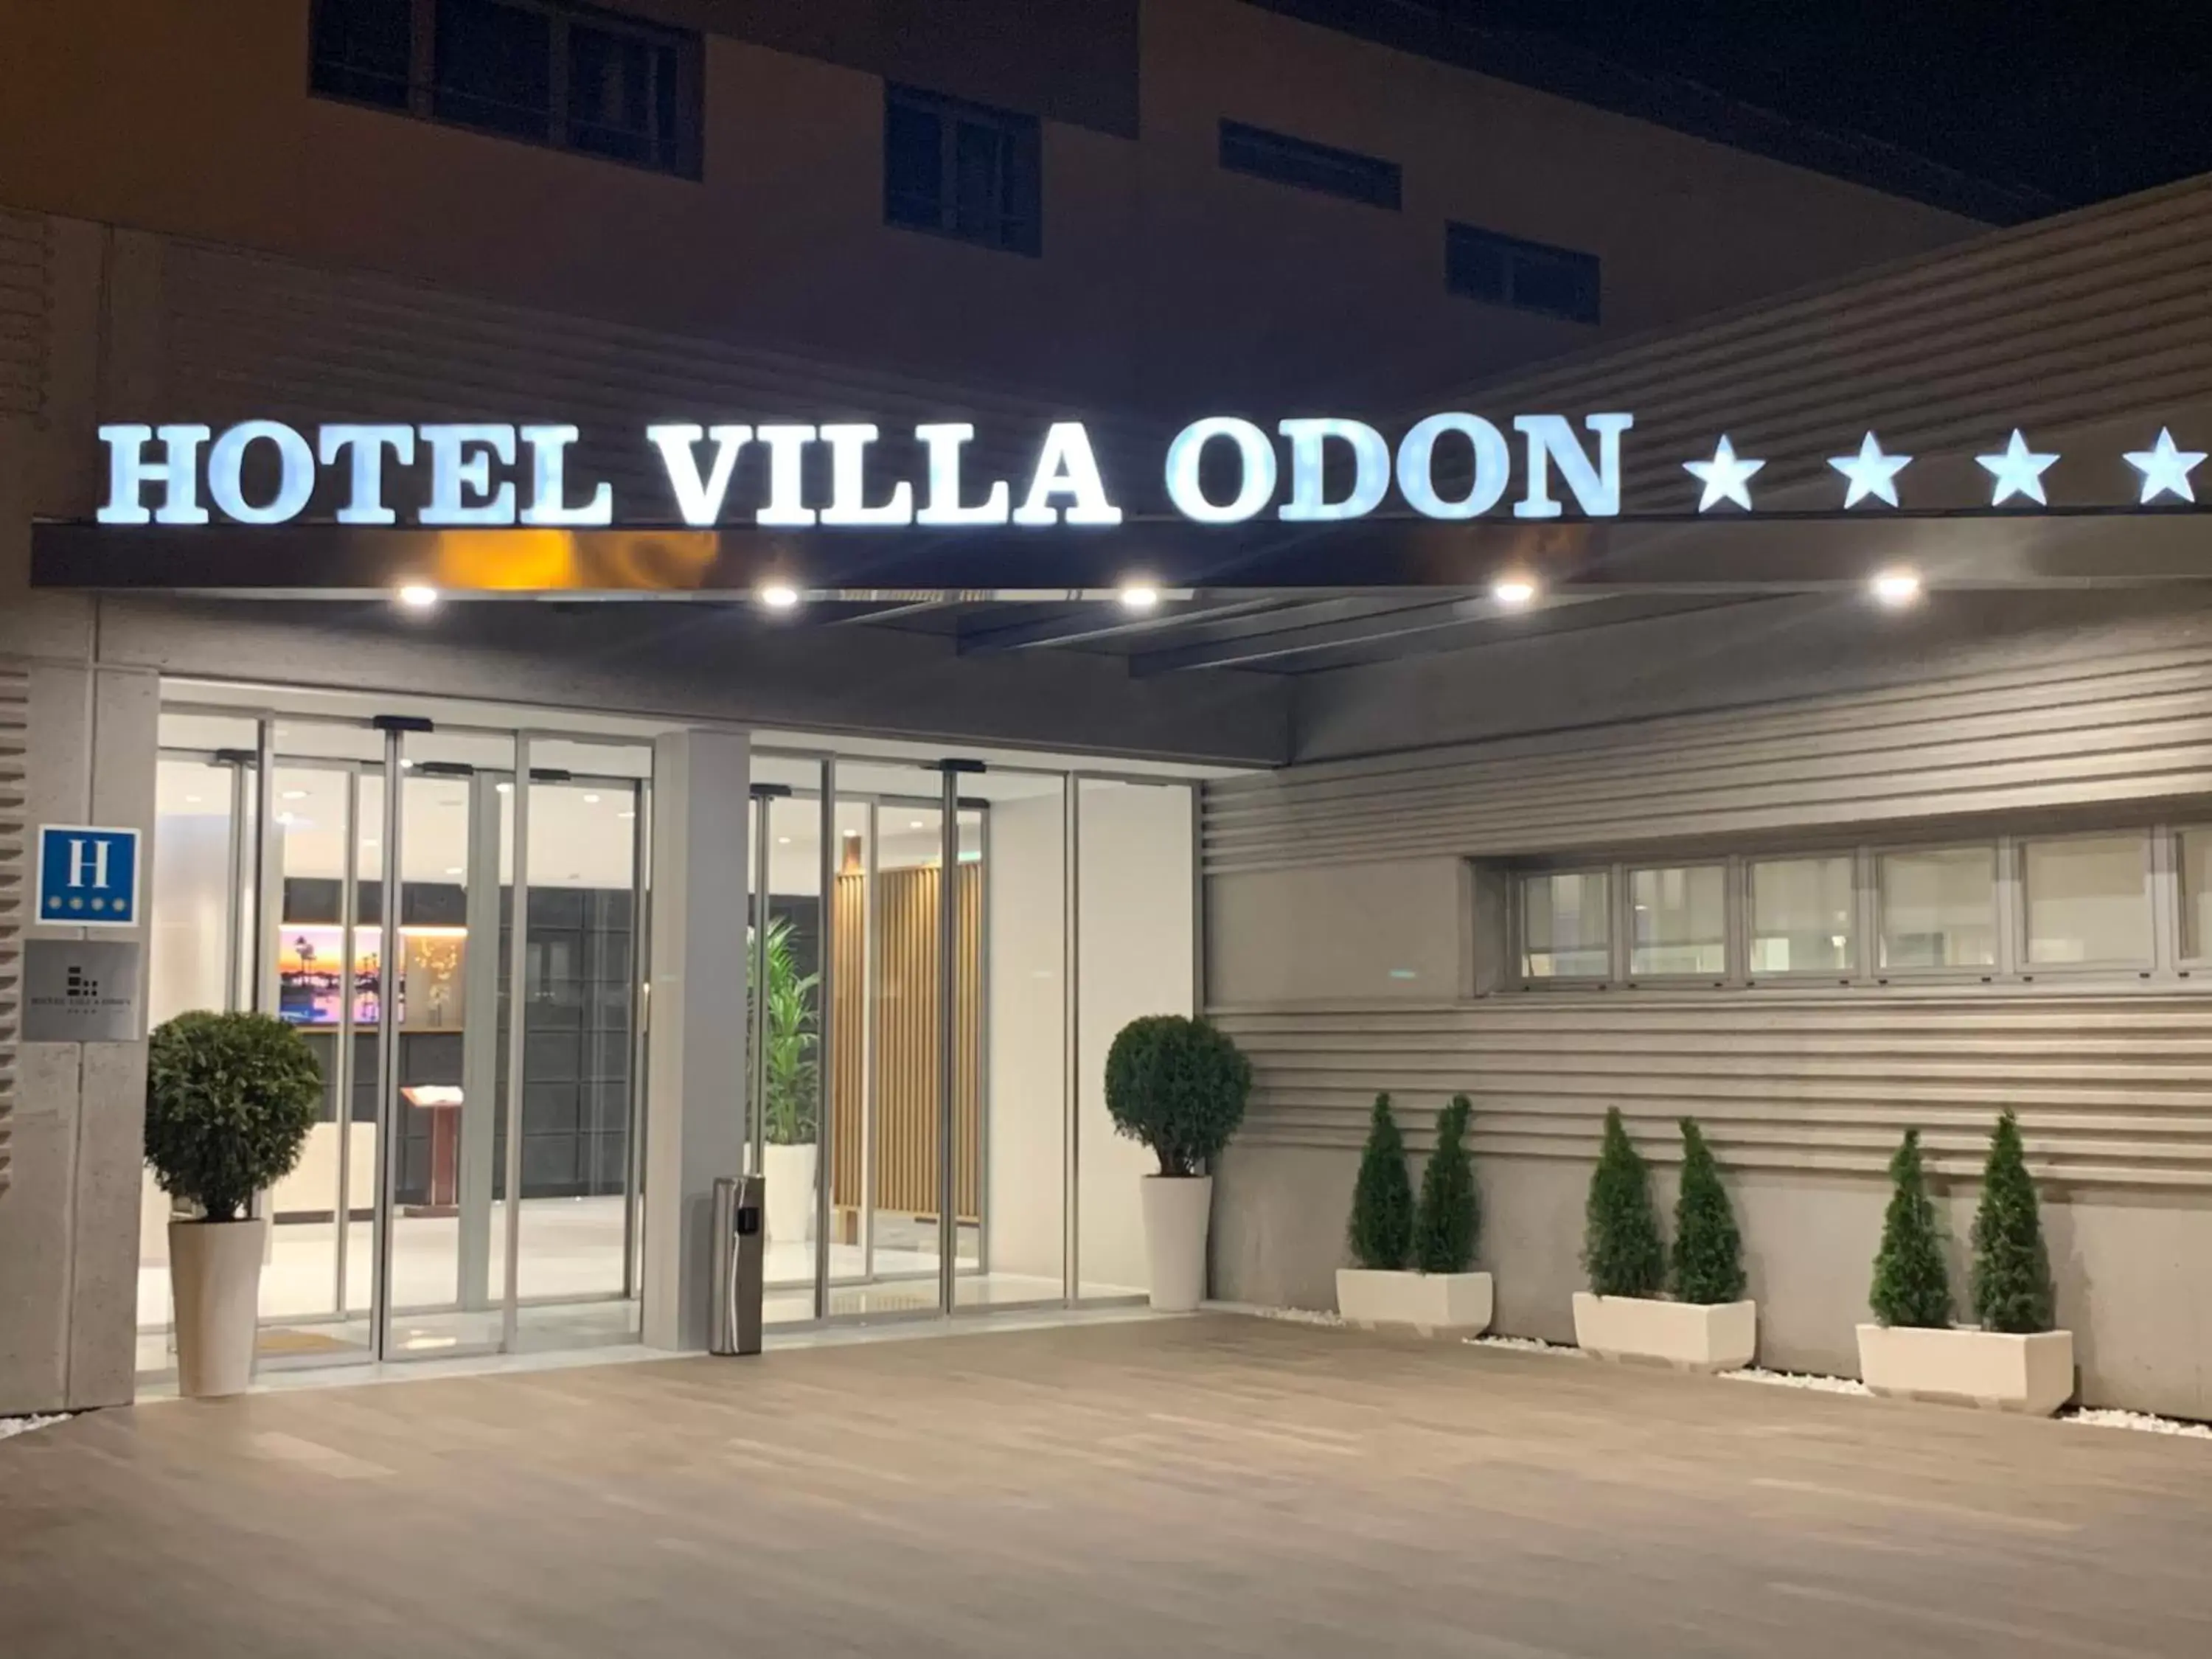 Property building in Hotel Villa Odon